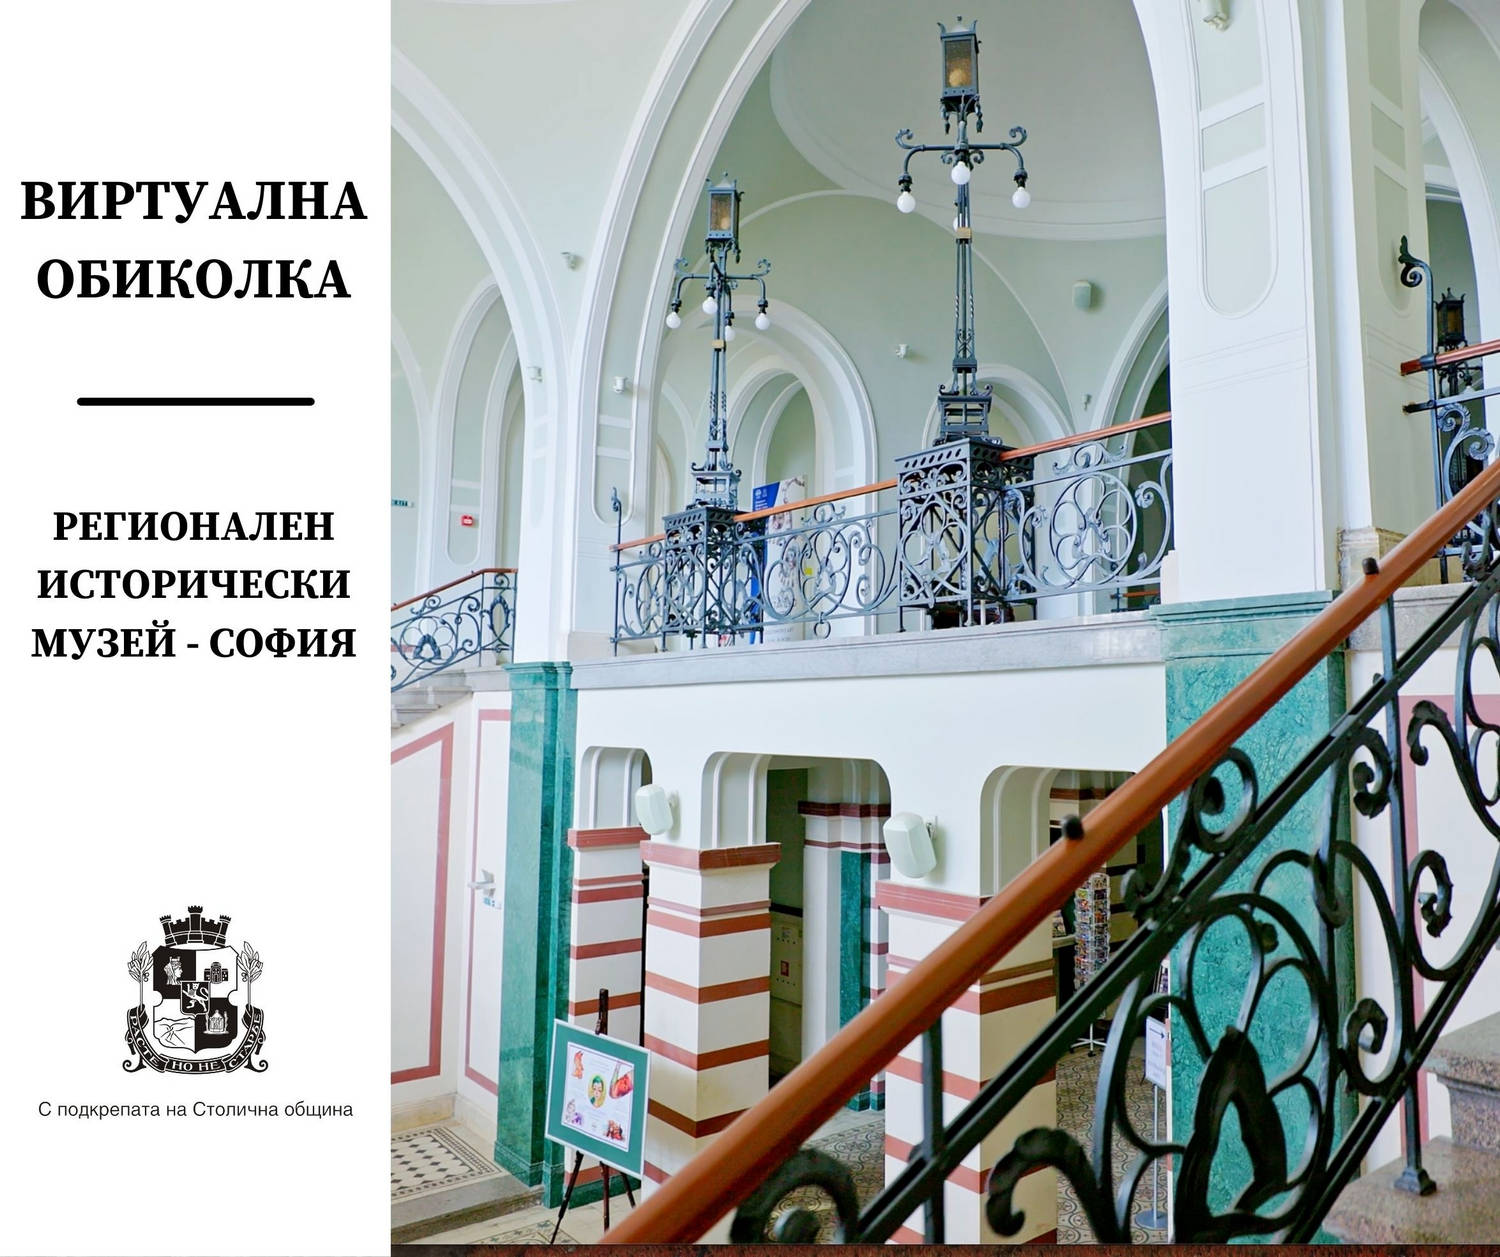 Регионалният исторически музей на София предлага нова възможност виртуална